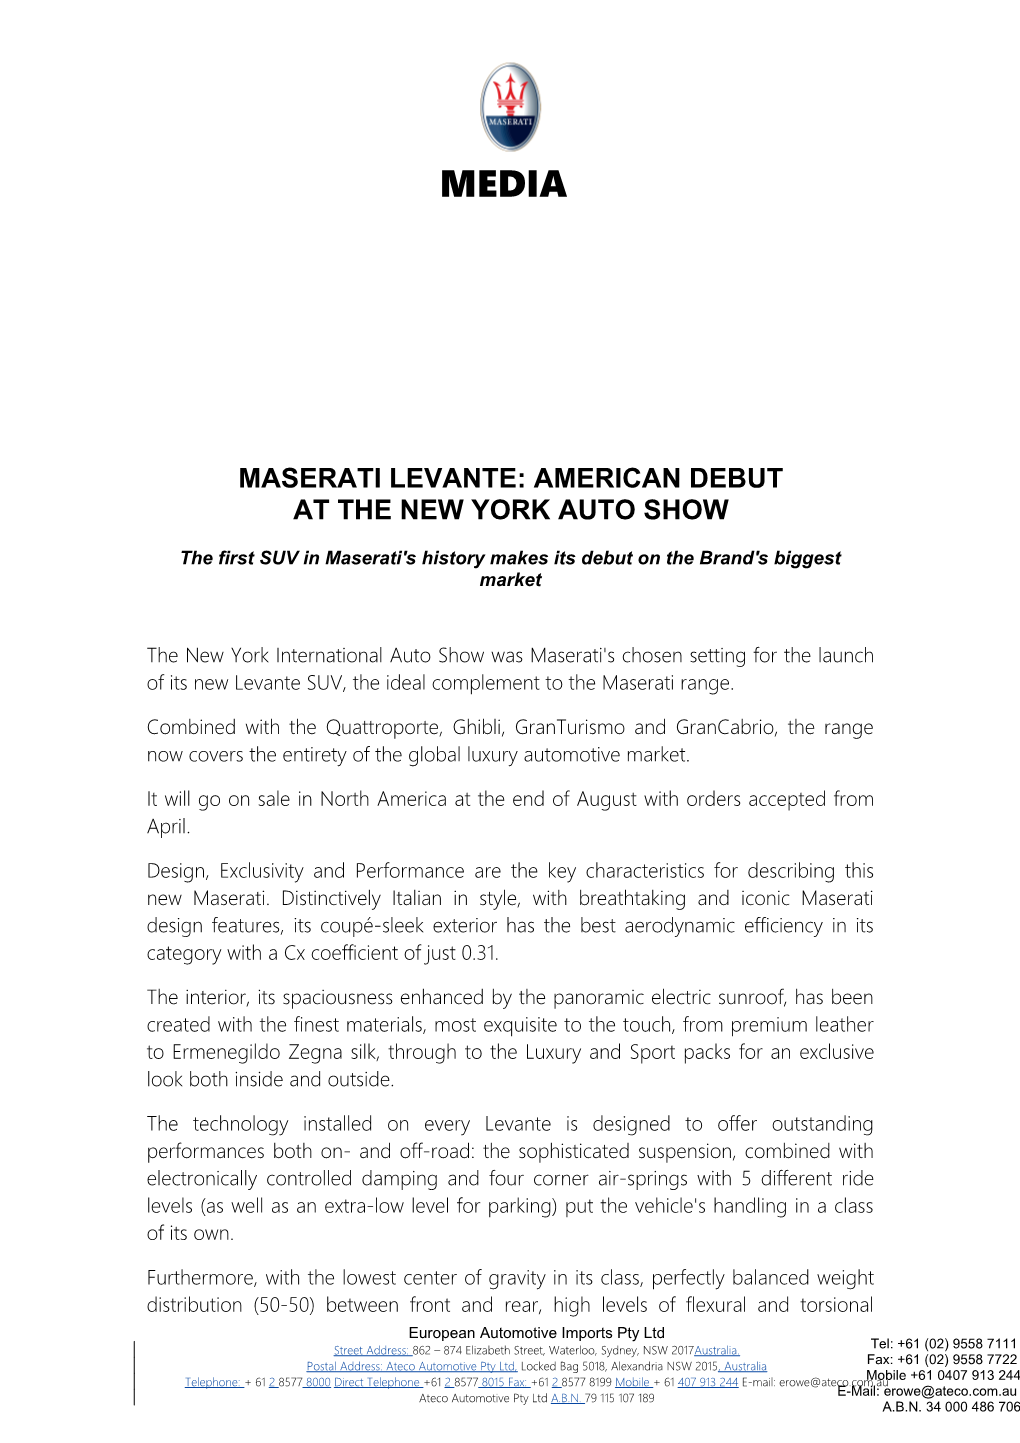 Maserati Levante: American Debut